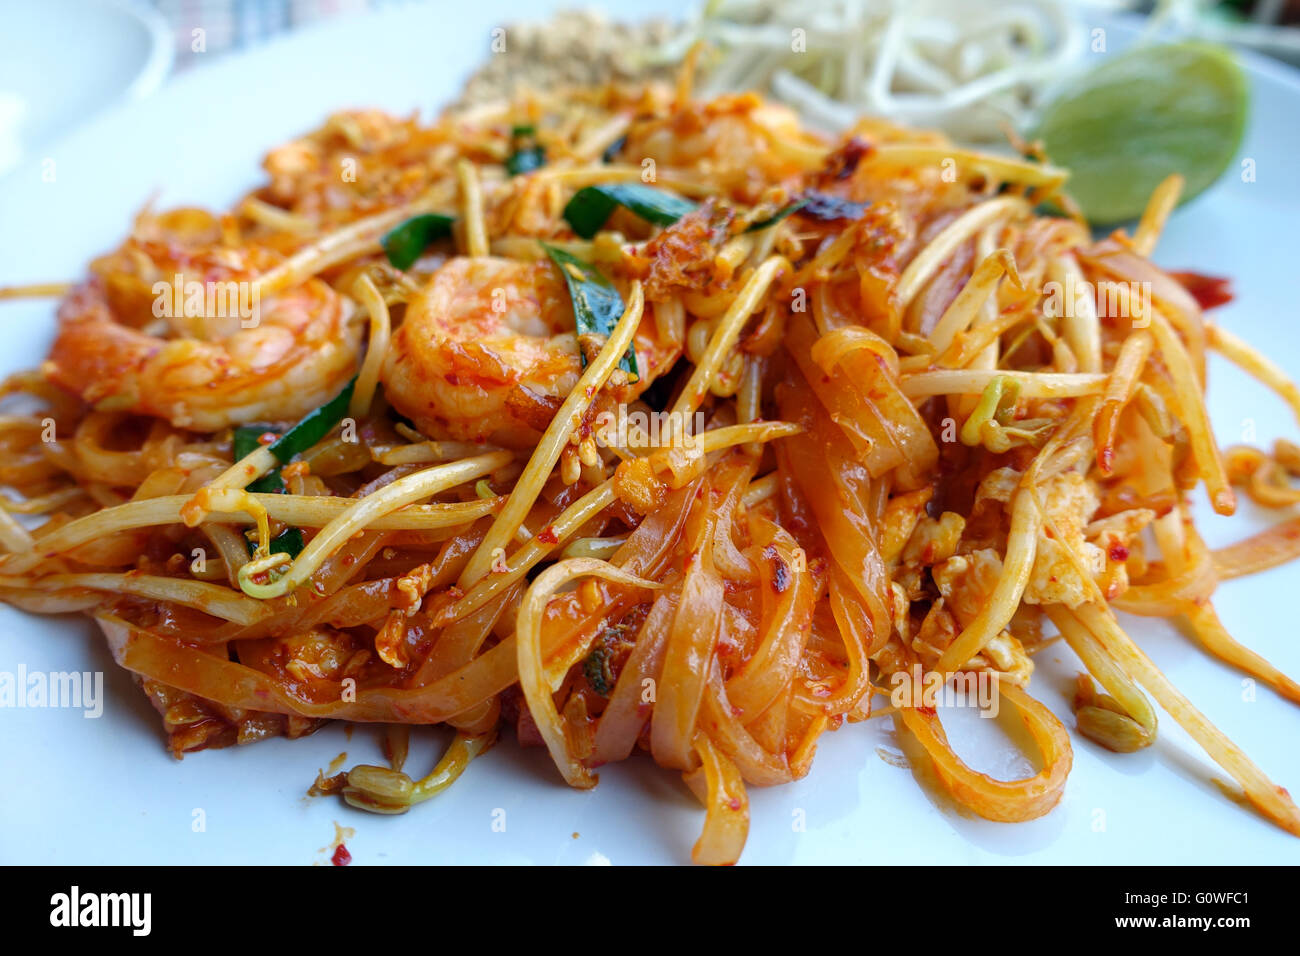 Une plaque de pad thaï est considéré sur une table dans un restaurant à Karon, Thaïlande 12 mars 2016. Phat Thai ou un Pad Thaï est un plat de nouilles traditionnelles de la cuisine thaïlandaise. Il se compose de nouilles de riz, les œufs battus, la sauce de poisson, la pâte de tamarin, l'ail haché, la poudre de chili, germes de haricots, les crevettes séchées, le tofu et la viande ou les fruits de mer en option. Il est garni avec les cacahuètes concassées et les feuilles de coriandre, citron vert, oignons de printemps. Photo : Alexandra Schuler/DPA - AUCUN SERVICE DE FIL- Banque D'Images